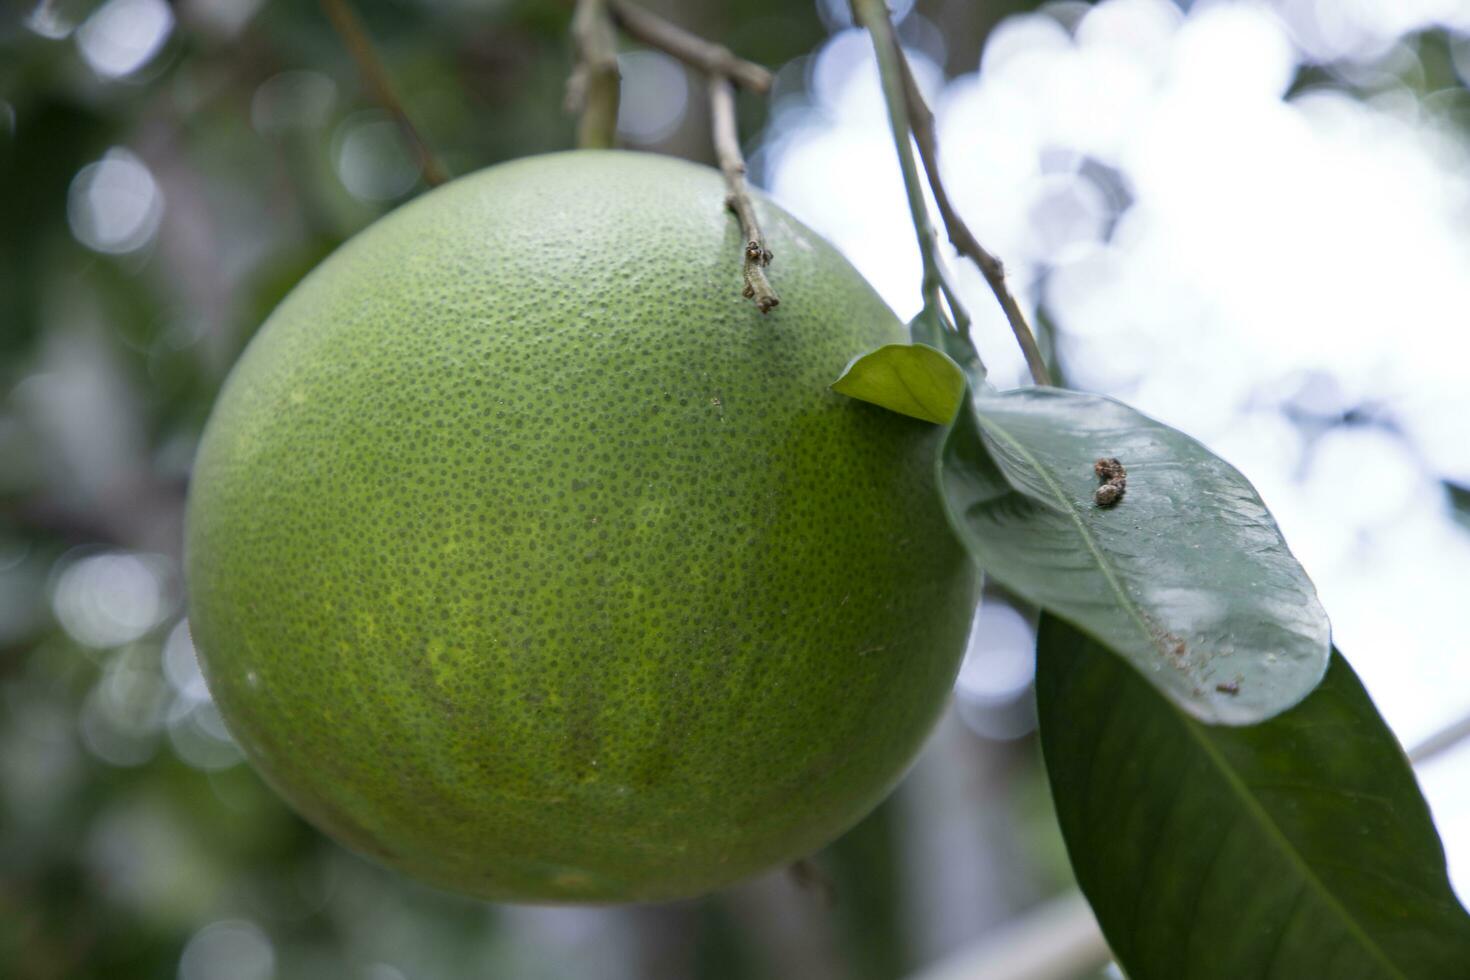 groen pomelo citrus grandis pomelo's zijn de meest prominent fruit sinaasappels hangende Aan de boom Afdeling foto